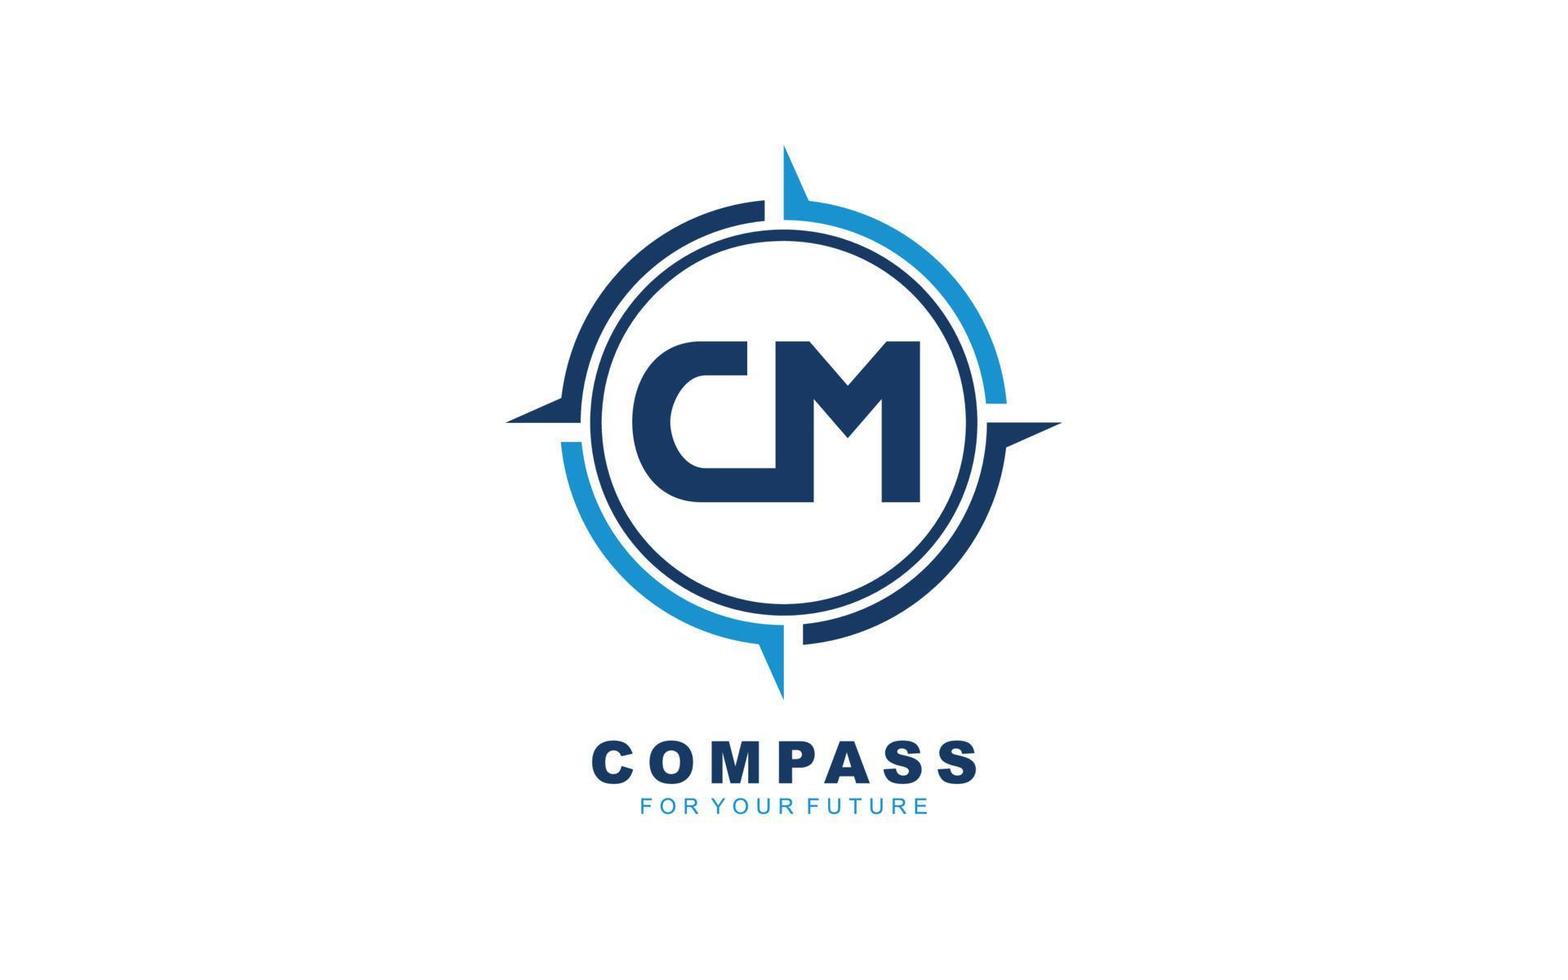 cm-Logo-Navigation für Branding-Unternehmen. Kompass-Vorlage, Vektorgrafik für Ihre Marke. vektor